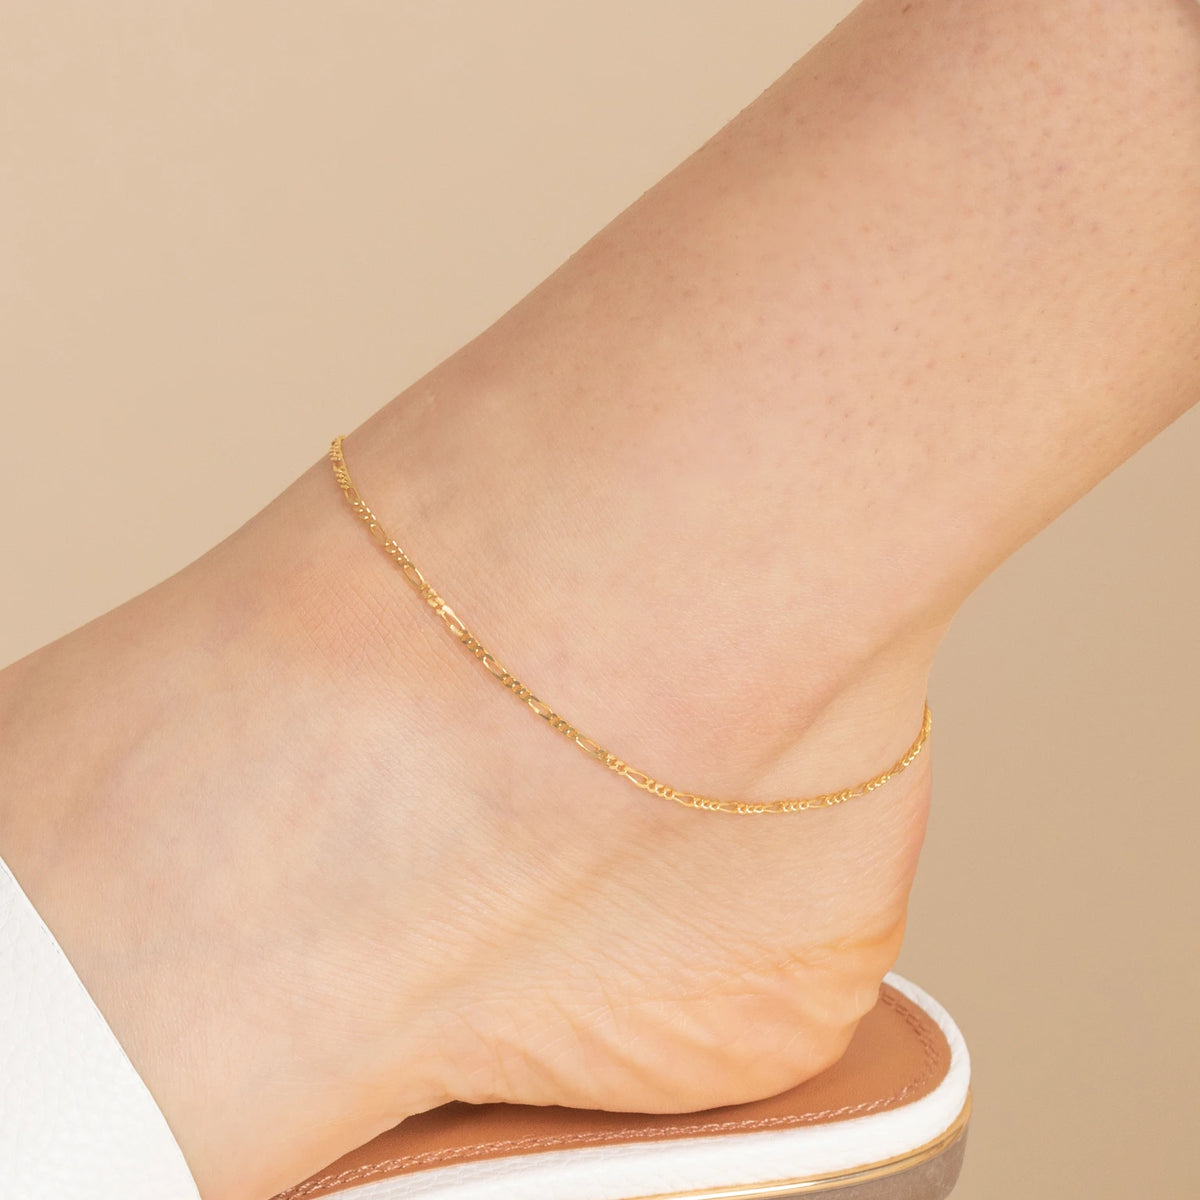 Solid Gold Anklets